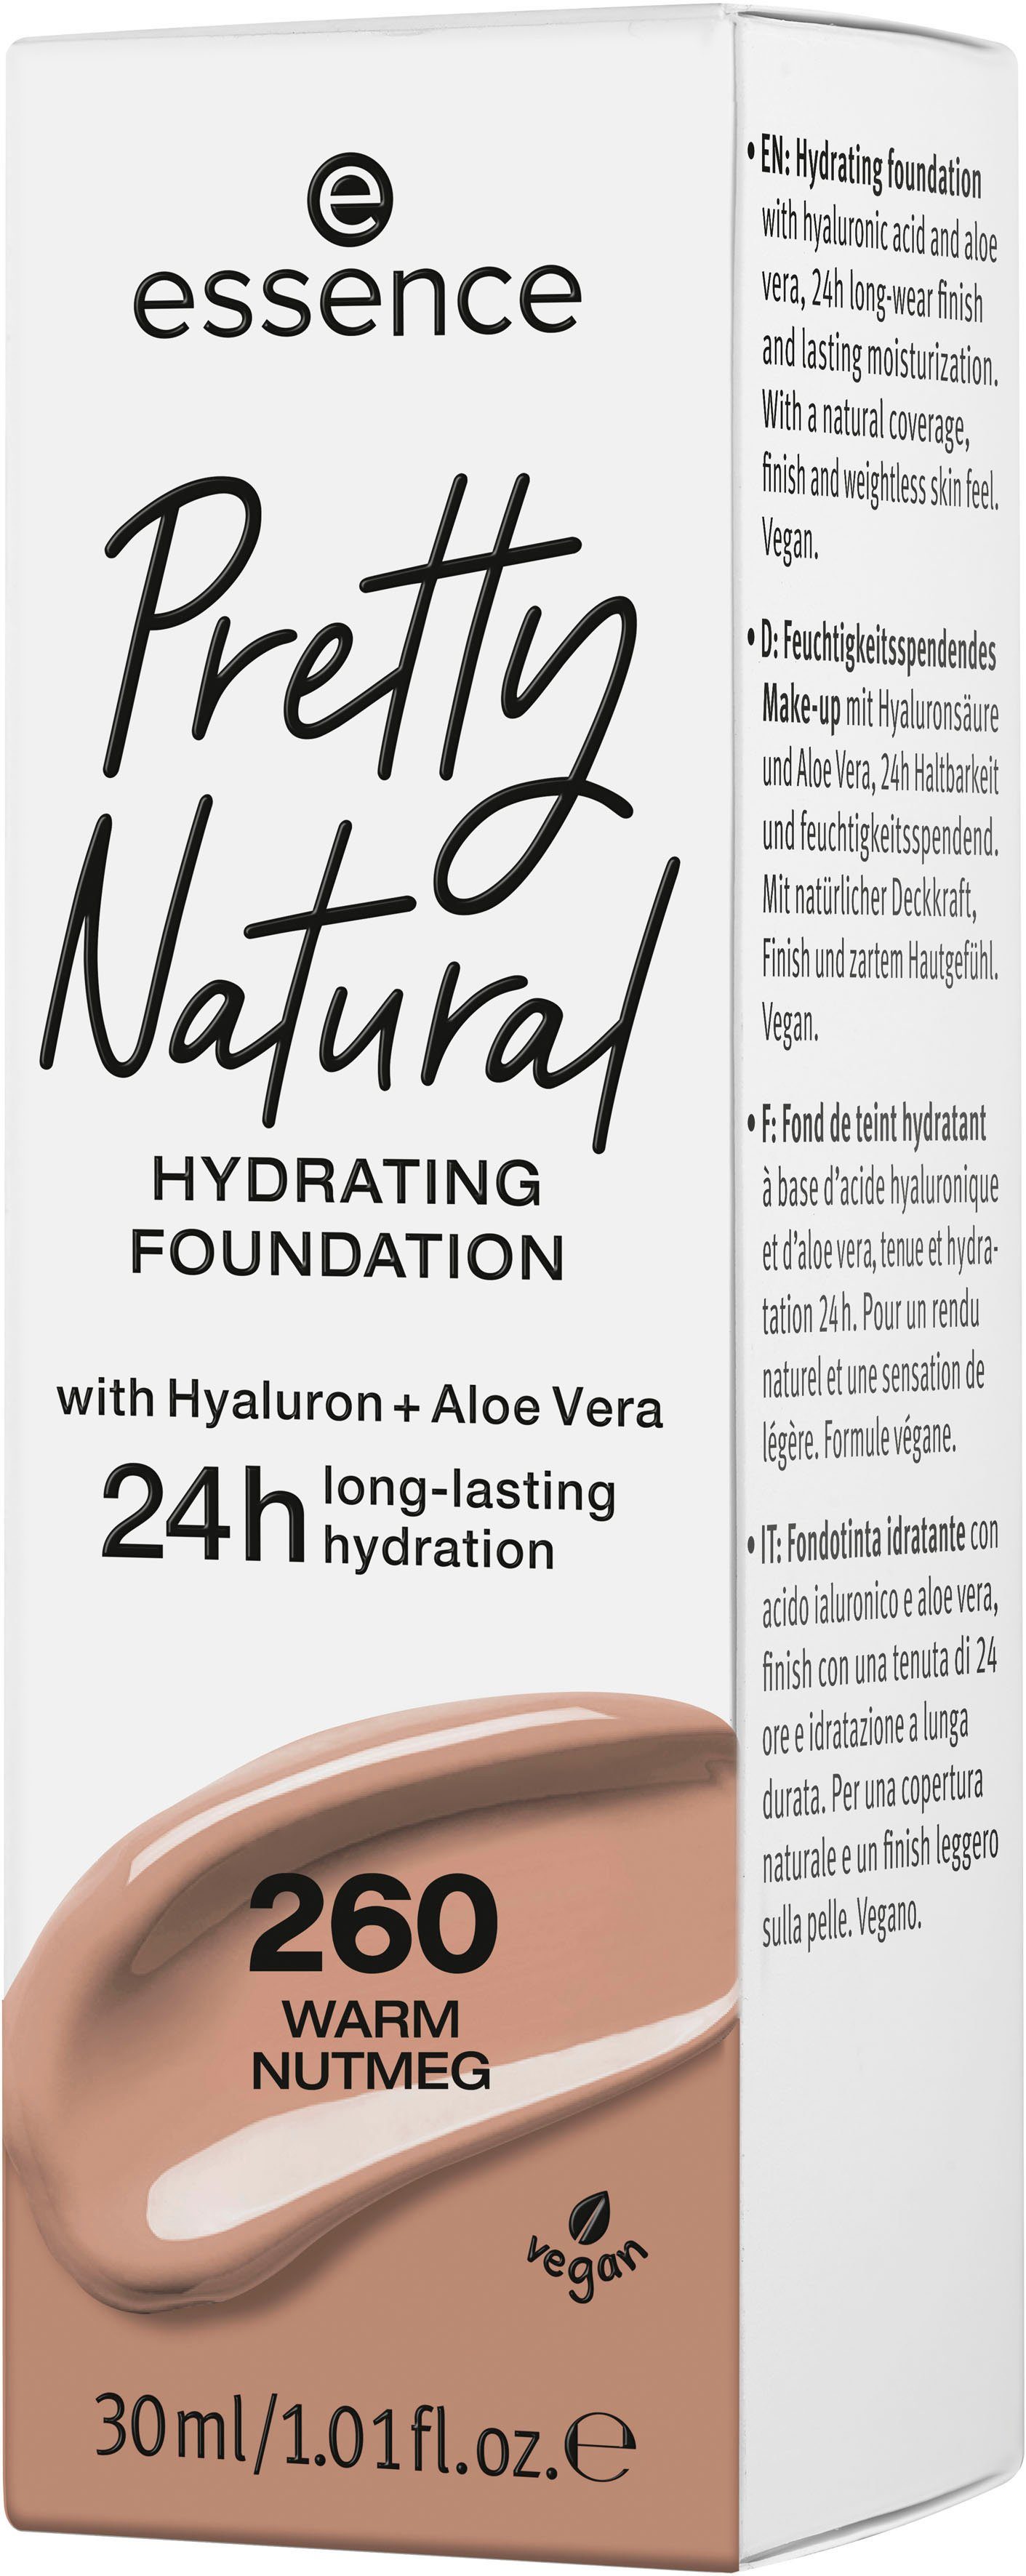 Natural Pretty Nutmeg Foundation HYDRATING, Essence Warm 3-tlg.